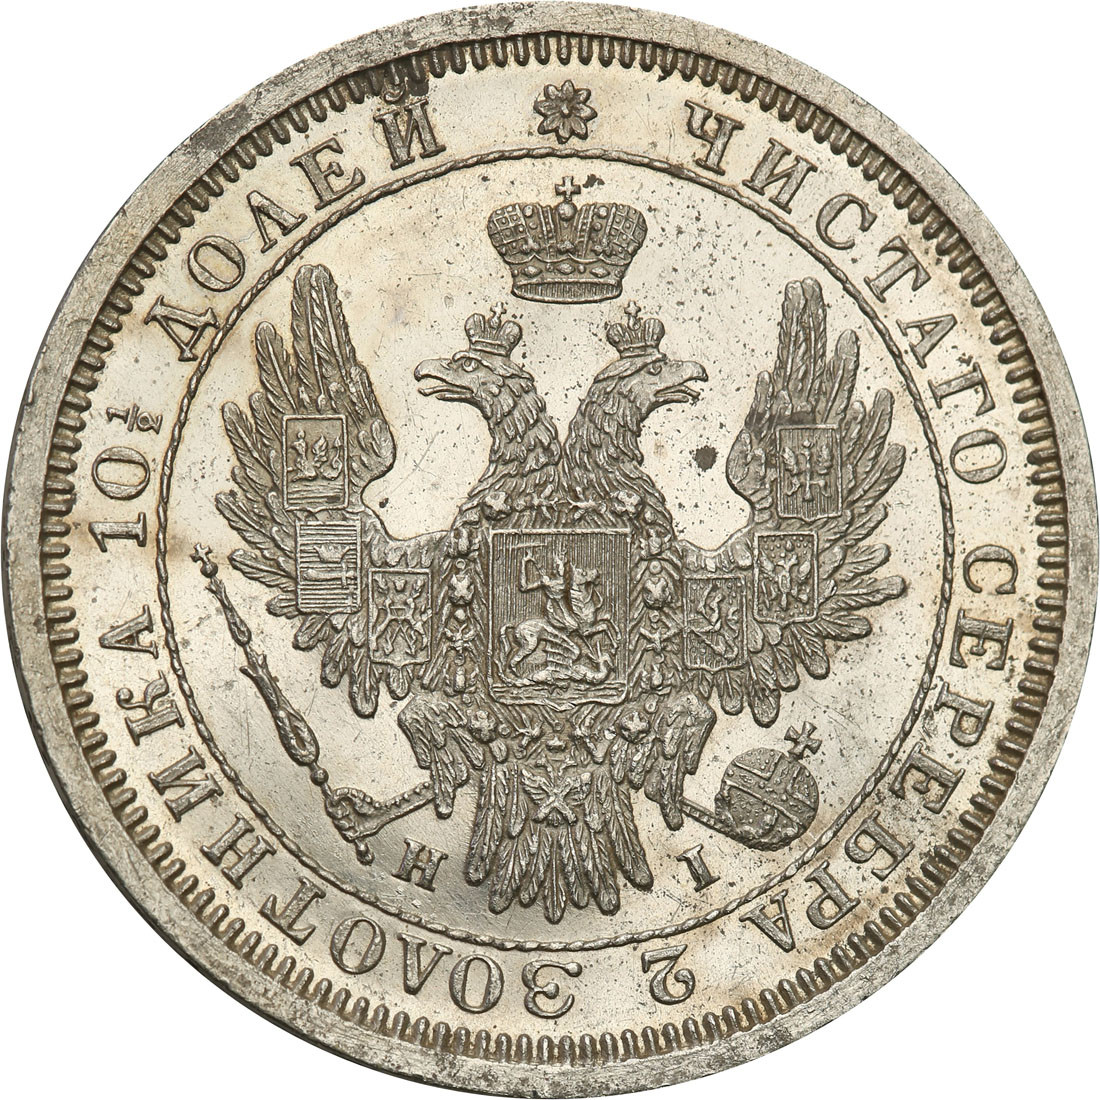 Rosja, Mikołaj l. Połtina (1/2 rubla) 1855, СПБ-HI, Petersburg - PIĘKNA